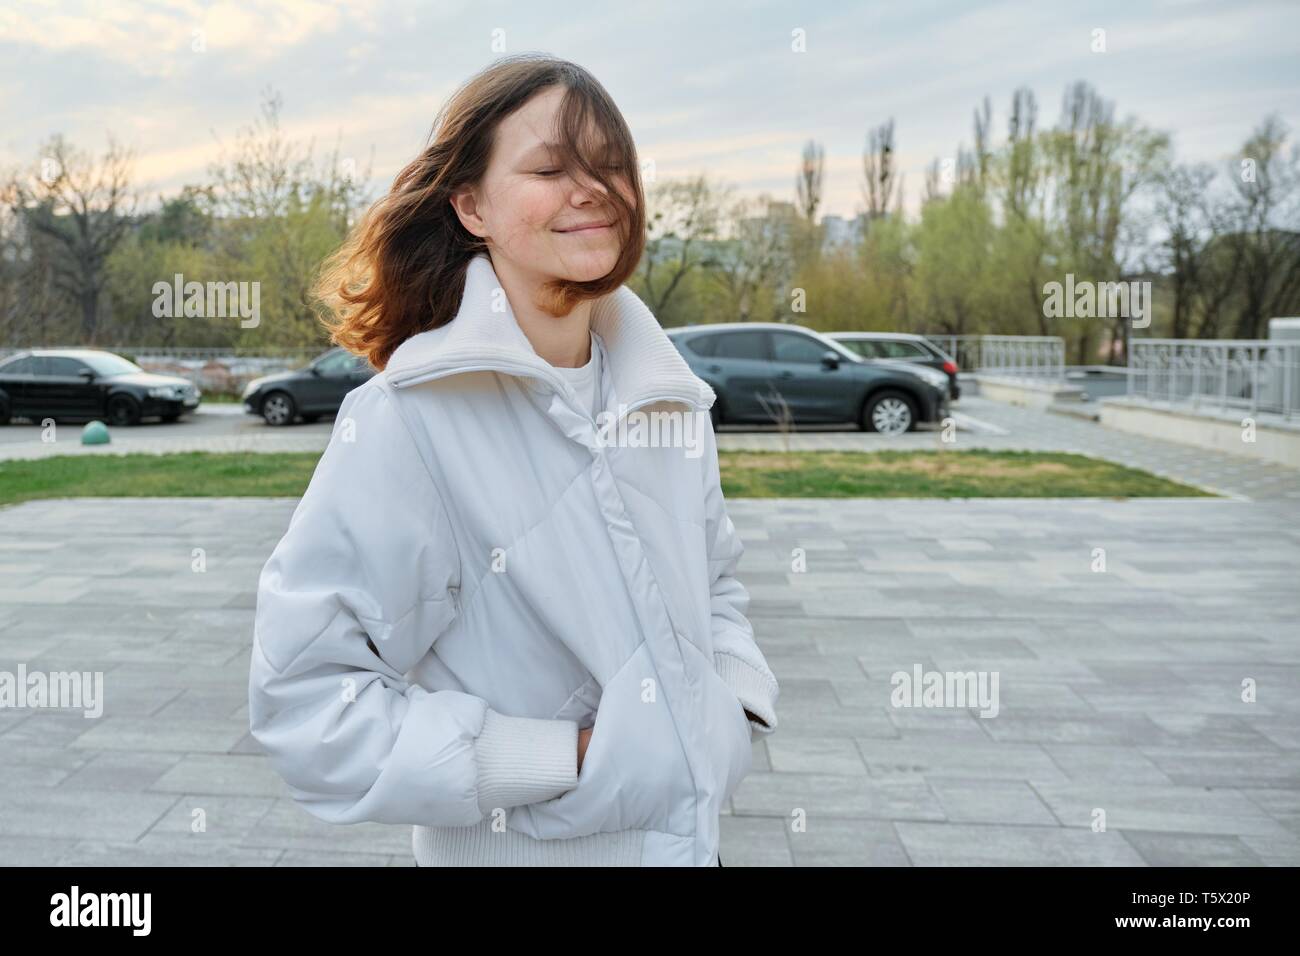 Outdoor ritratto della ragazza adolescente di quindici anni, ragazza sorridente con capelli lunghi marrone in camicia bianca. Foto Stock